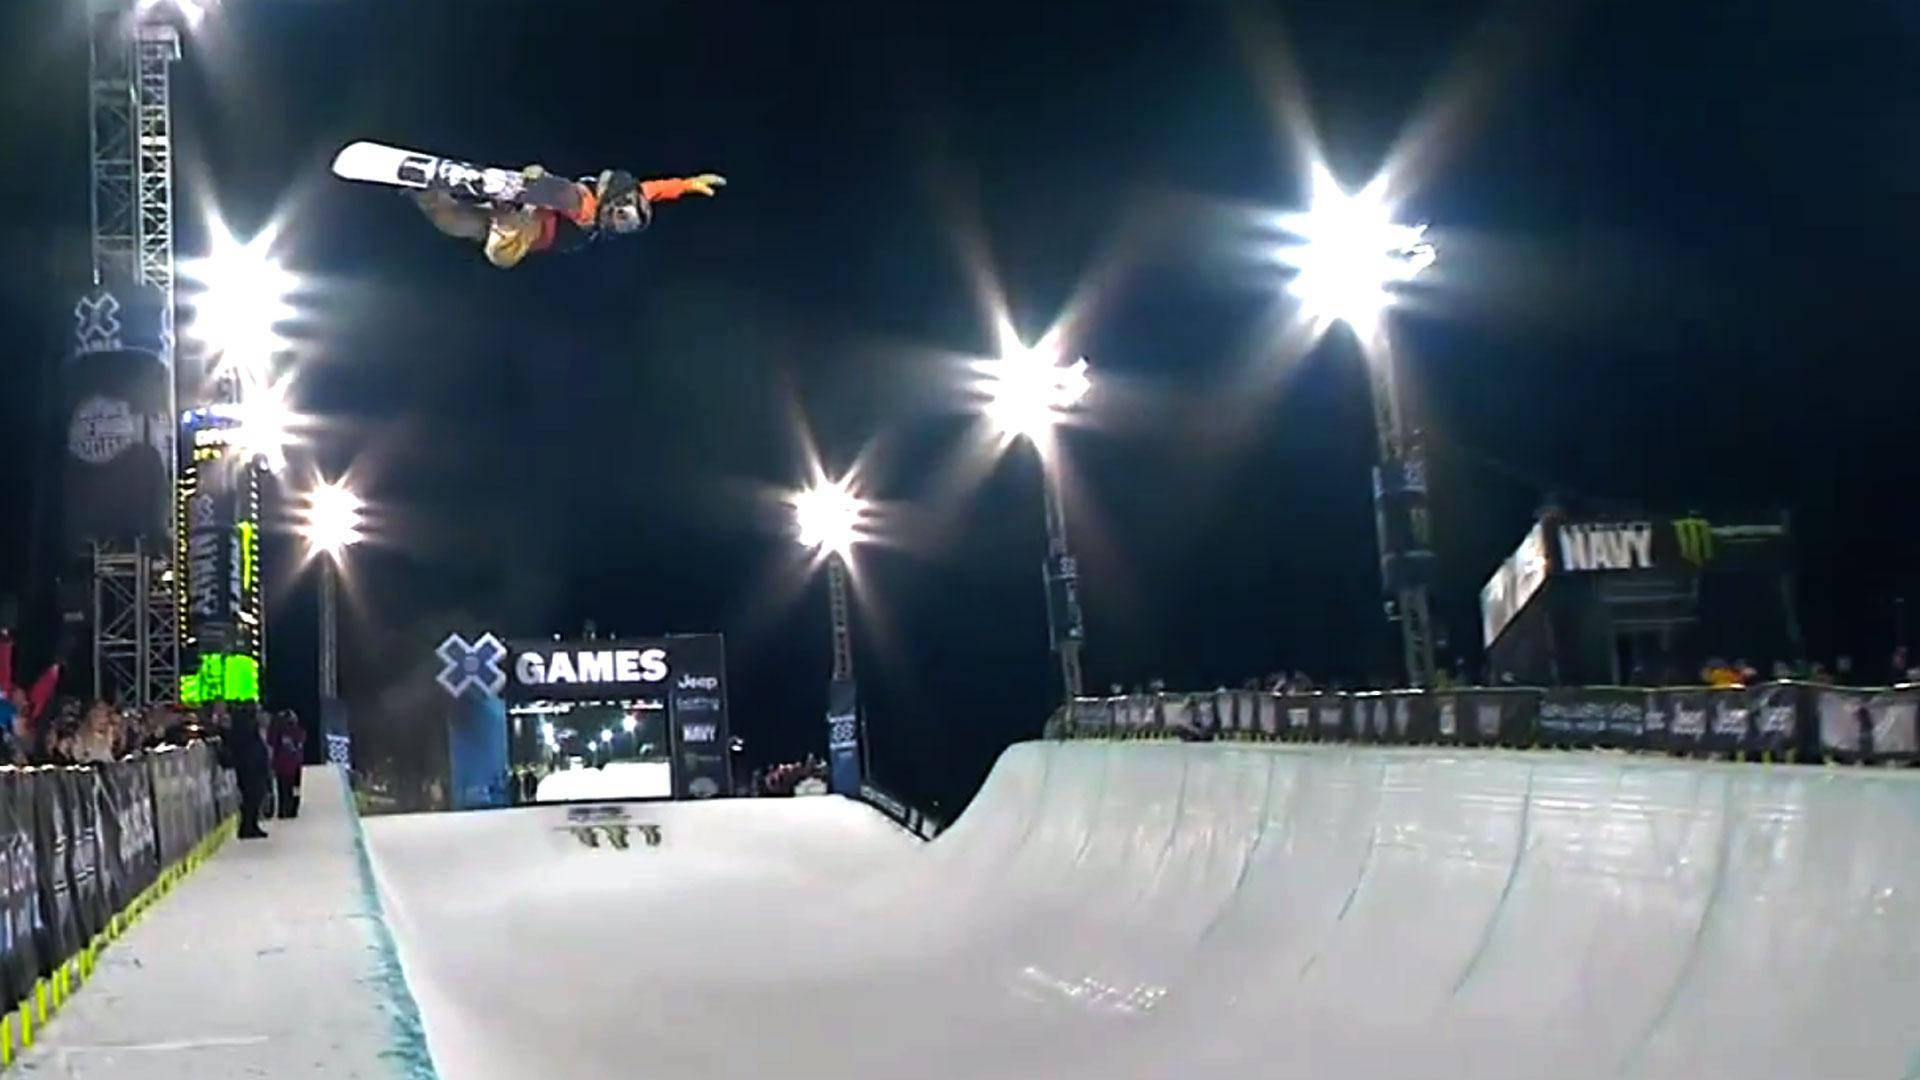 X Games Snowboard Stunt At Night